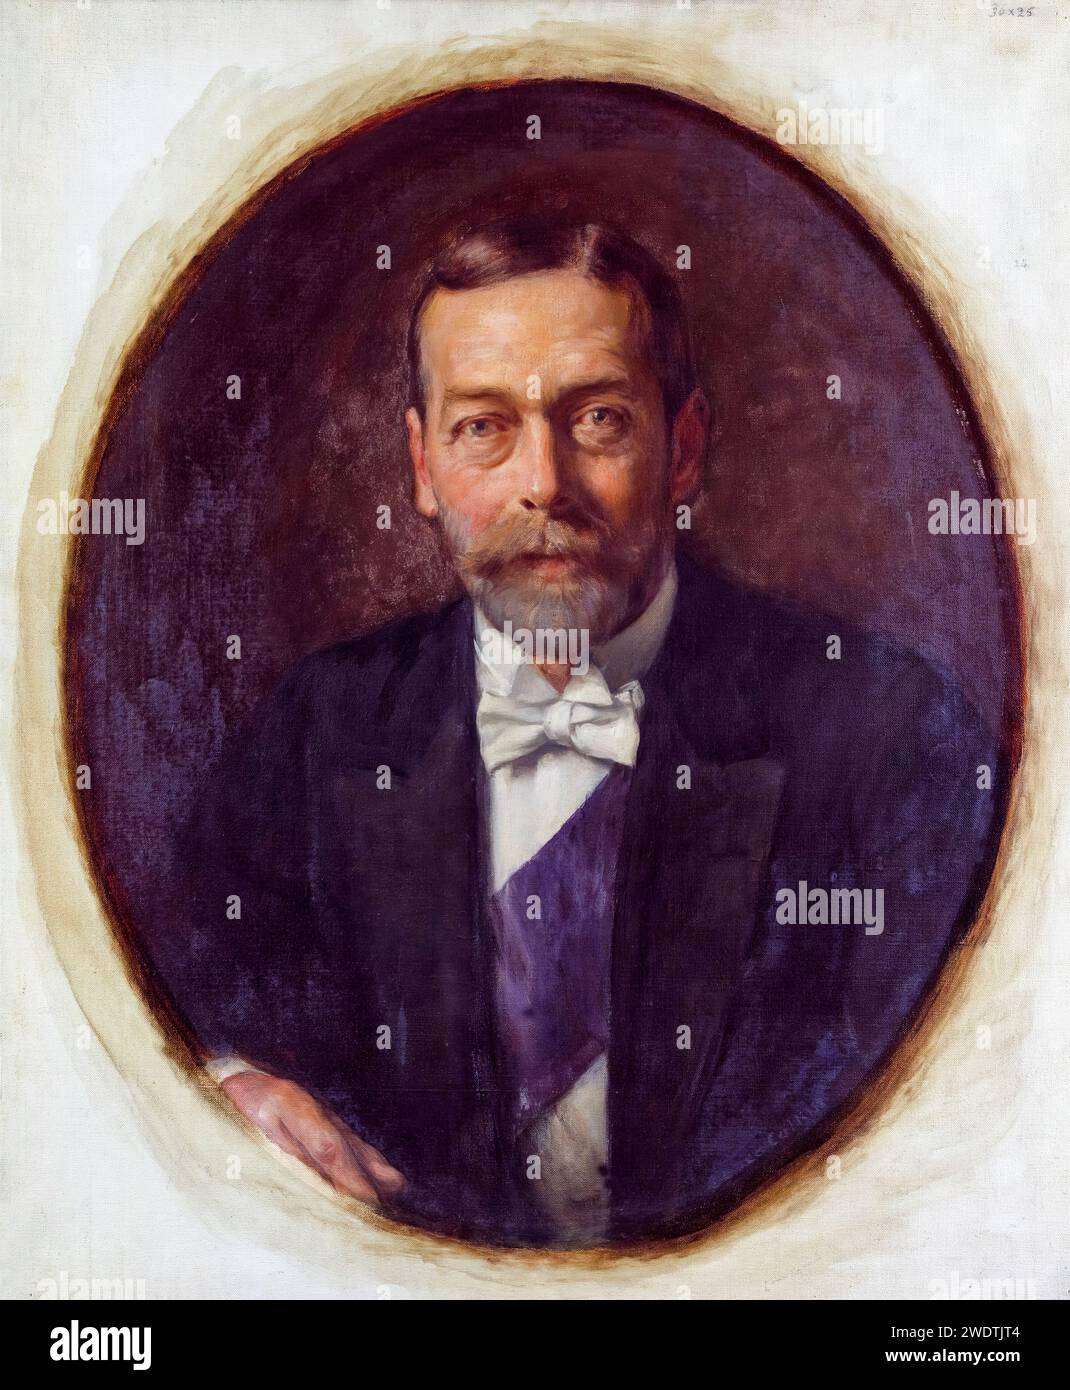 Giorgio V (1865-1936), re del Regno Unito e dei domini britannici, e imperatore dell'India (1910-1936), ritratto dipinto ad olio su tela di Lance Calkin, circa 1914 Foto Stock